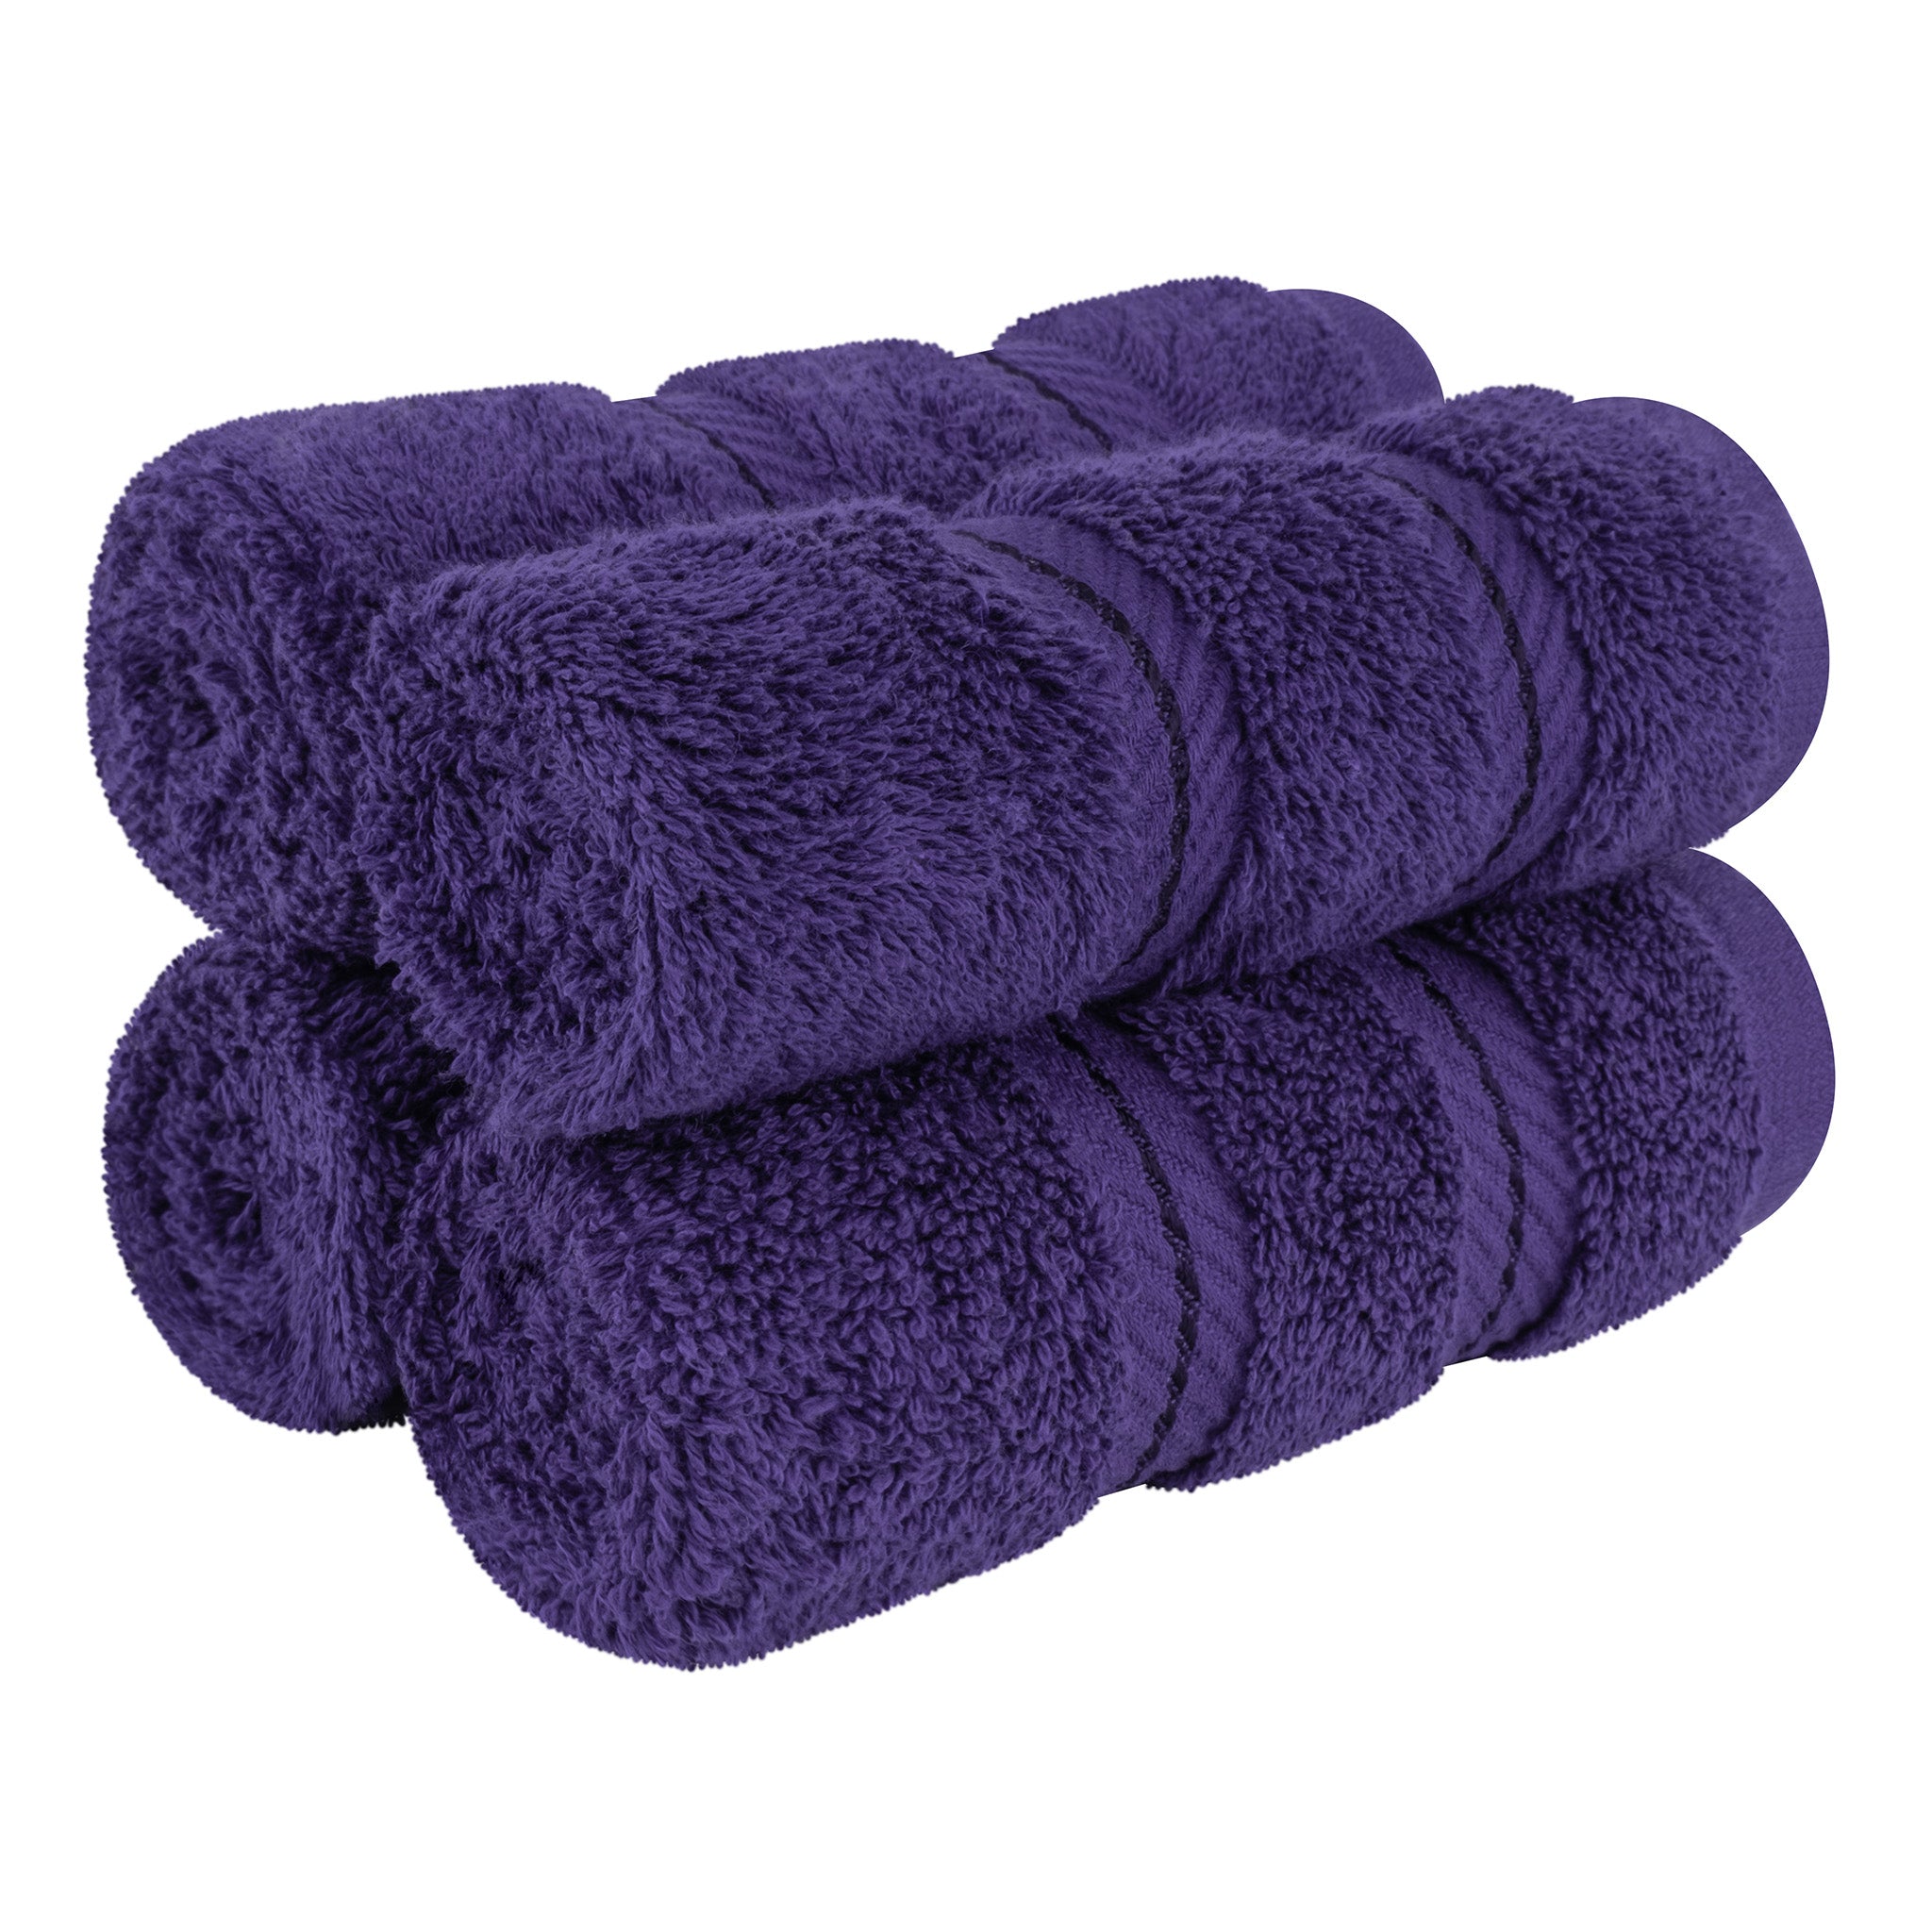 American Soft Linen 100% Turkish Cotton 4 Piece Washcloth Set purple-1